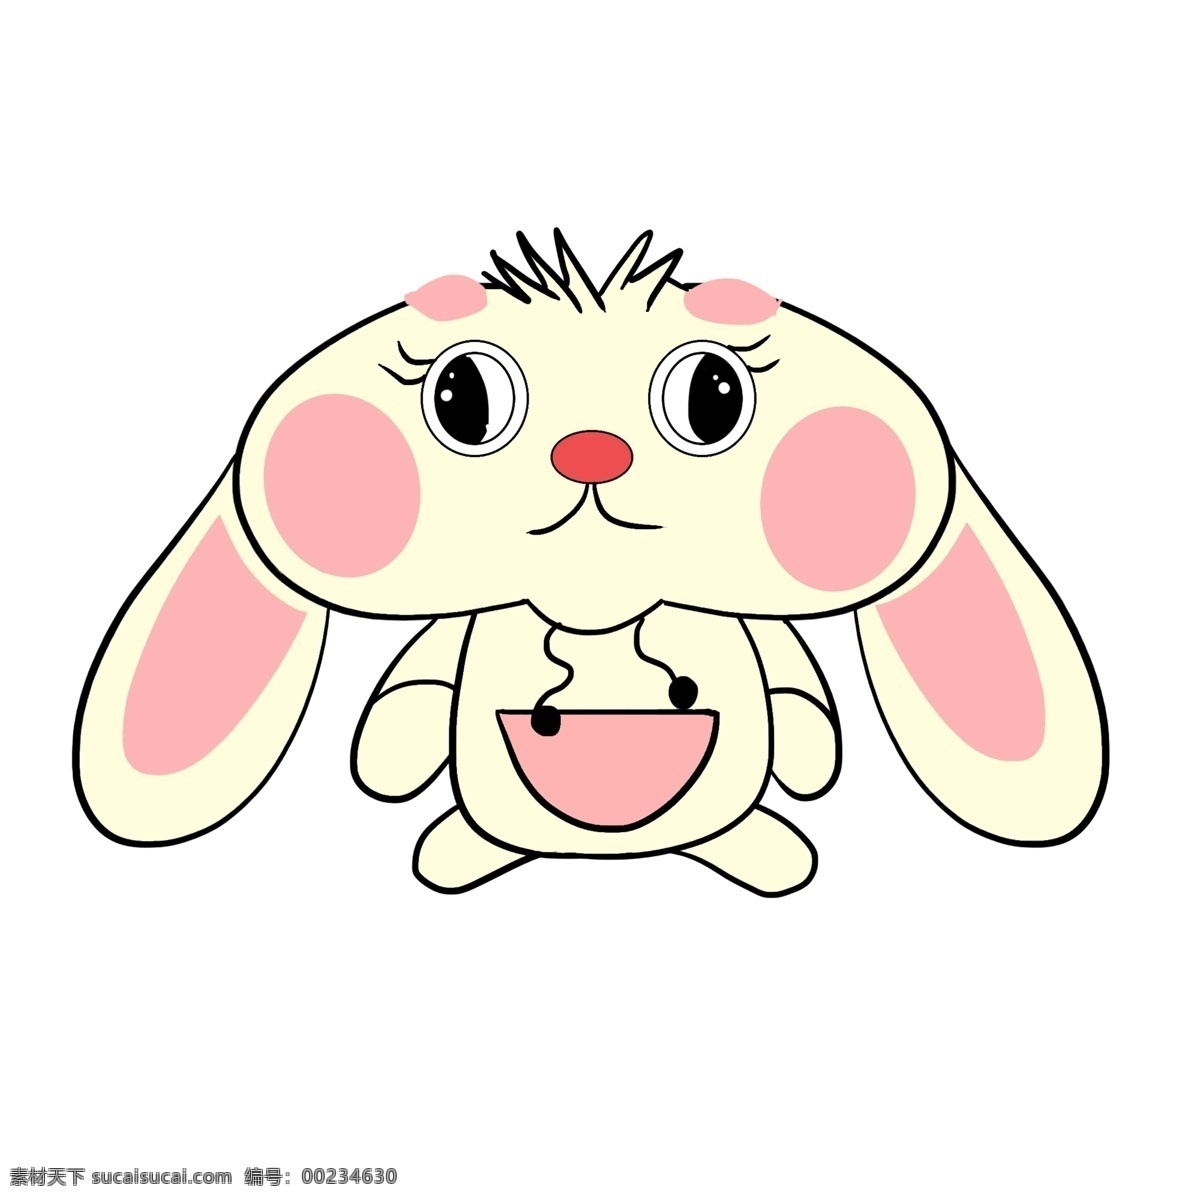 手绘 大 脸 兔子 插画 可爱的兔子 粉色的兔子 卡通插画 手绘兔子插画 大脸的兔子 拟人的兔子